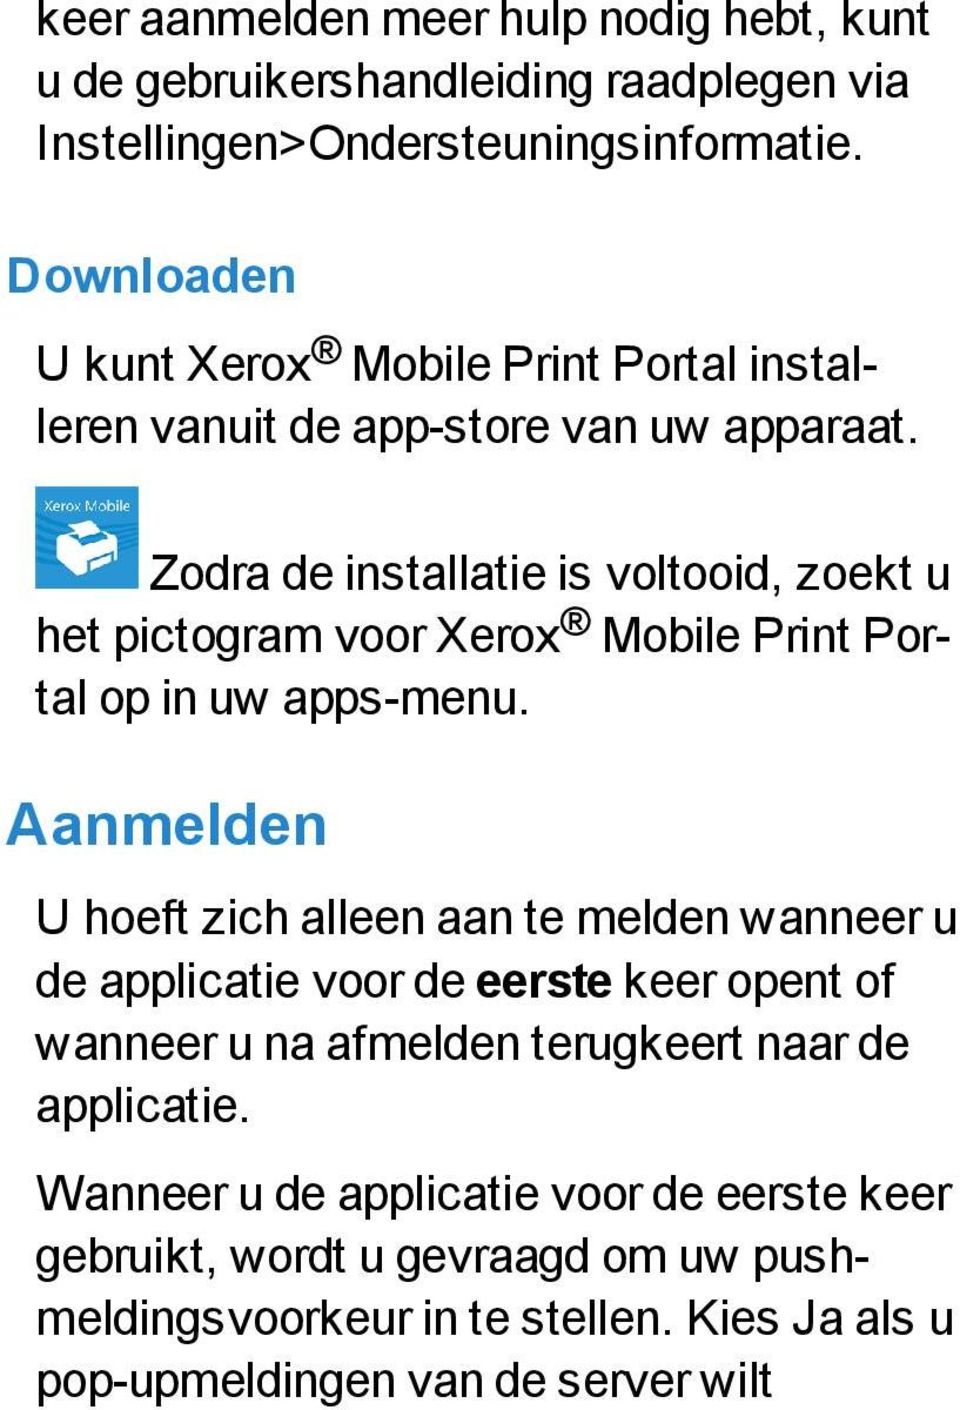 Zodra de installatie is voltooid, zoekt u het pictogram voor Xerox Mobile Print Portal op in uw apps-menu.